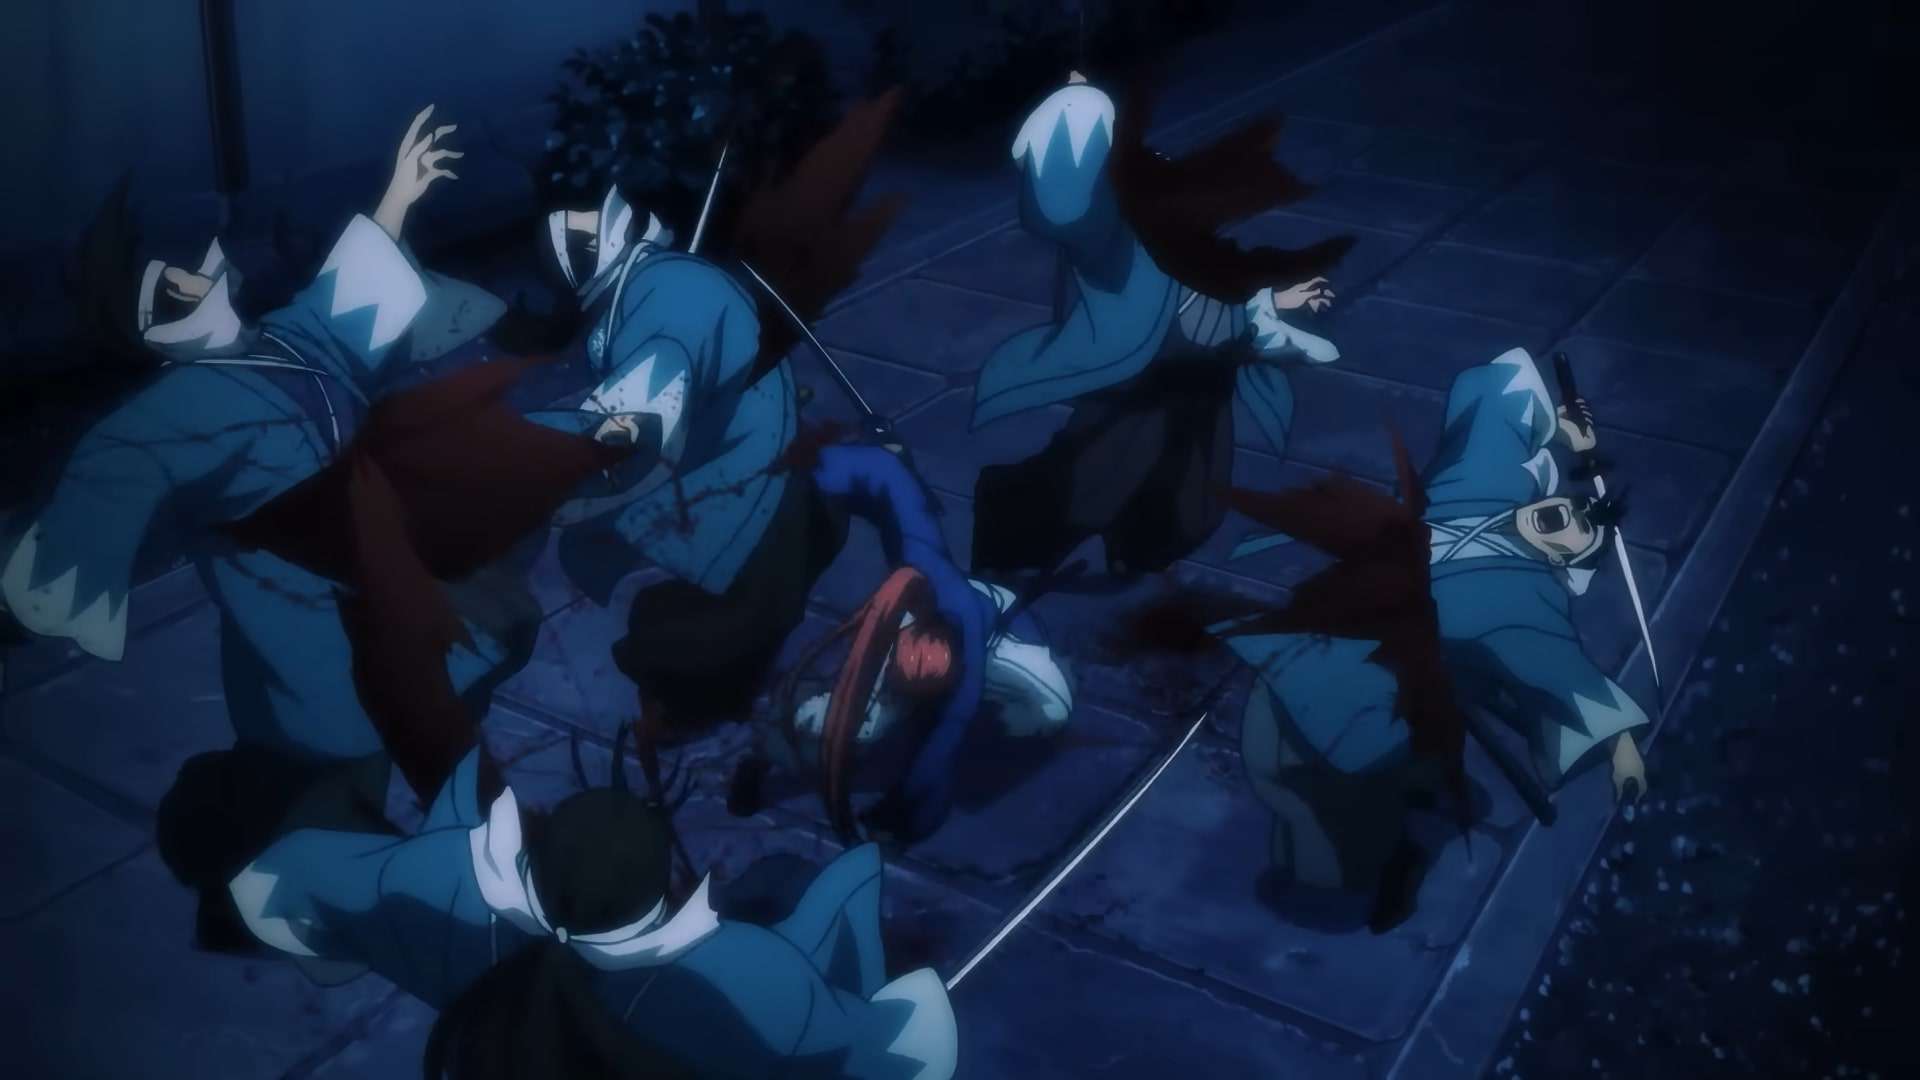 Kenshin's sword fighting technique